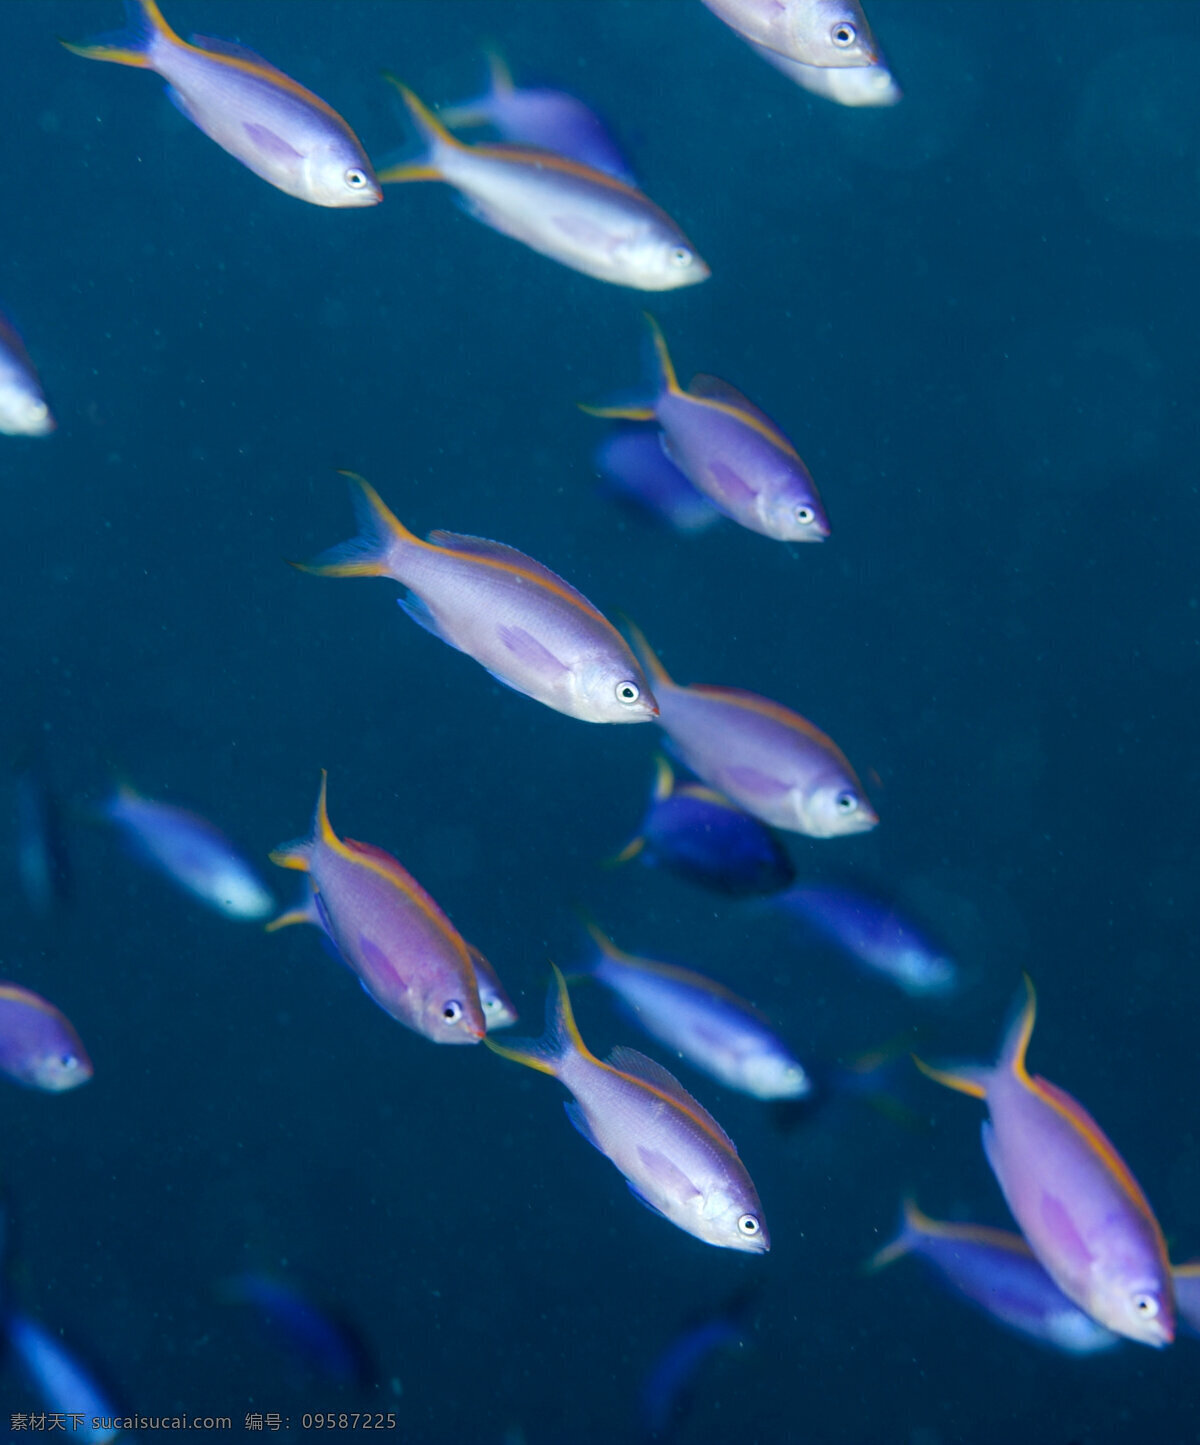 白色 海洋鱼类 海底摄影 鱼群 海底世界 海底 海洋 大海 海中生物 自然界 鱼类 海鱼 大海图片 风景图片